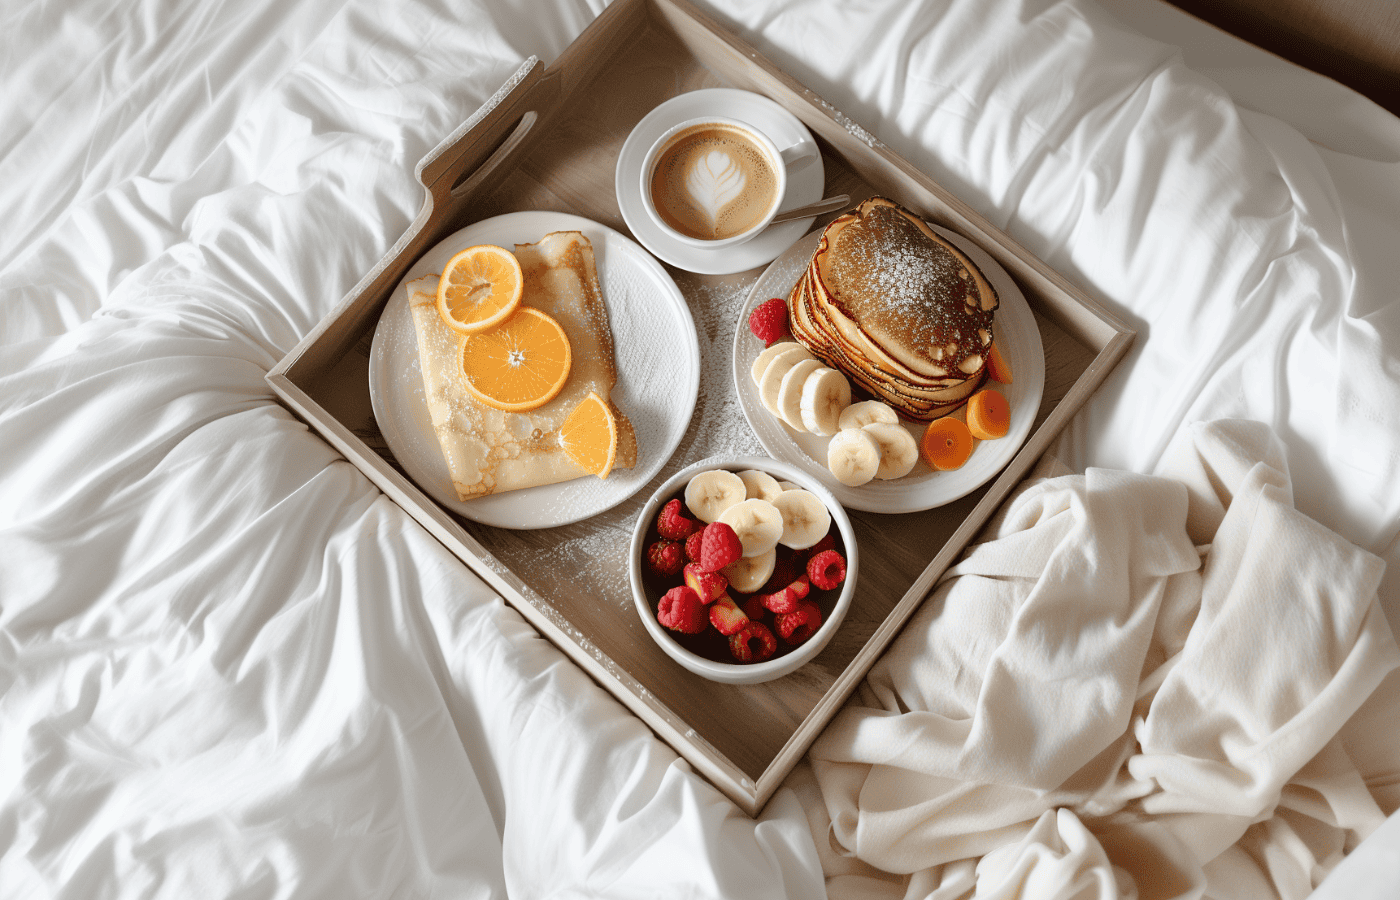 gluten-free breakfast in bed with Healthy GF Vegan Breakfast Ideas